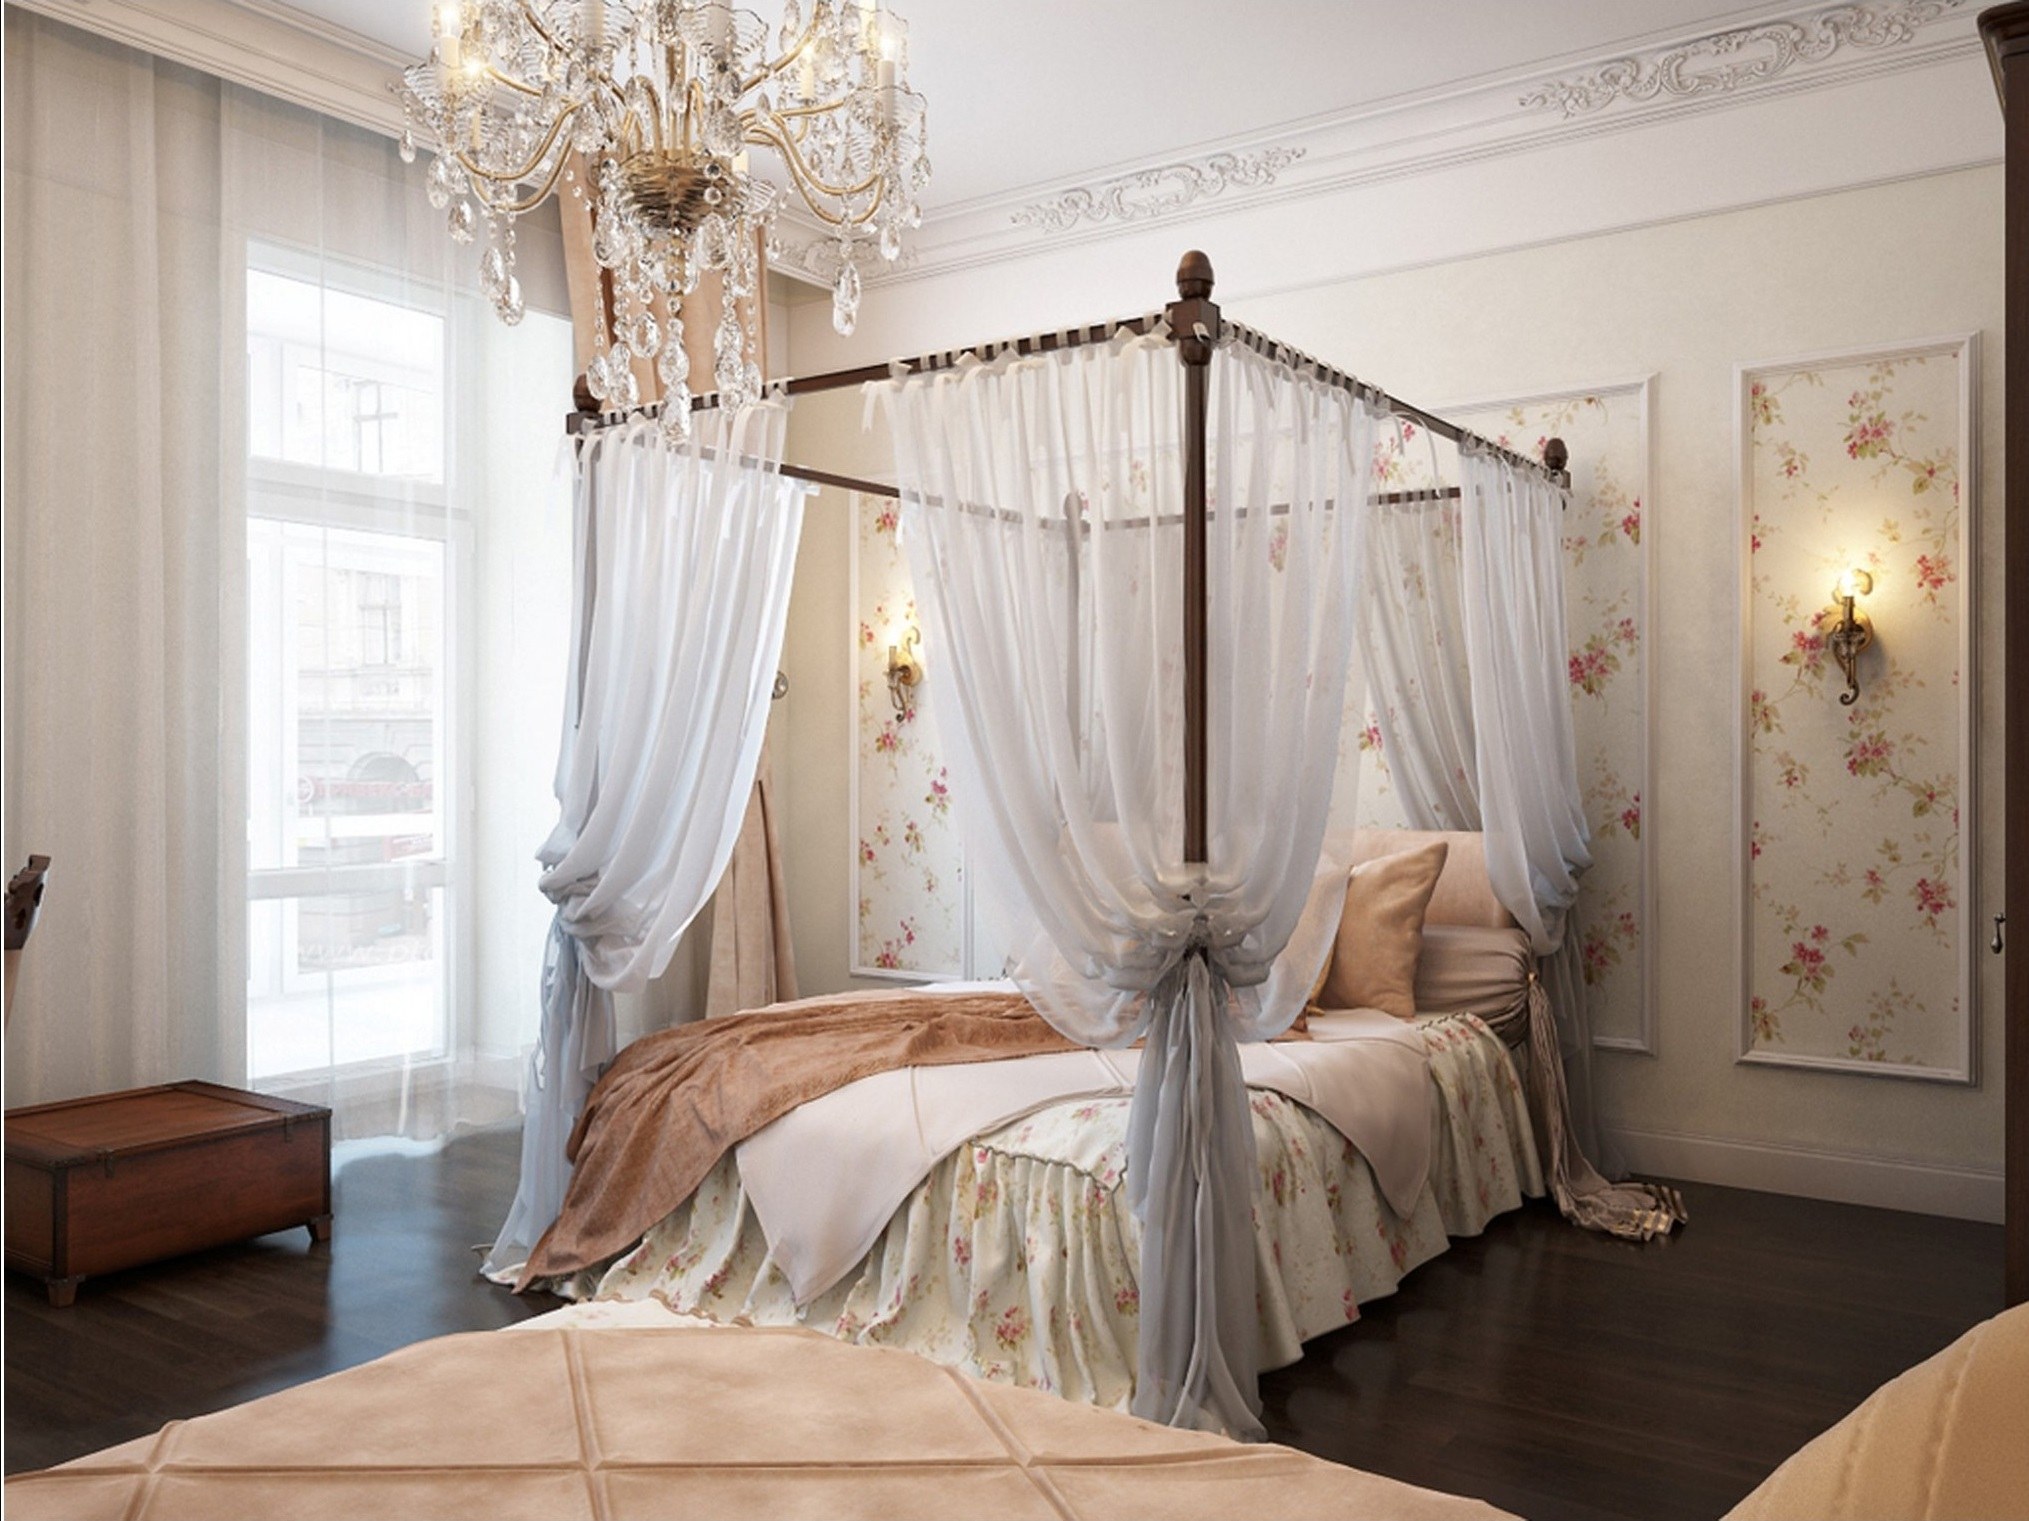 Phong cách thiết kế nội thất Romanticism với chiếc giường ngủ vô cùng nữ tính